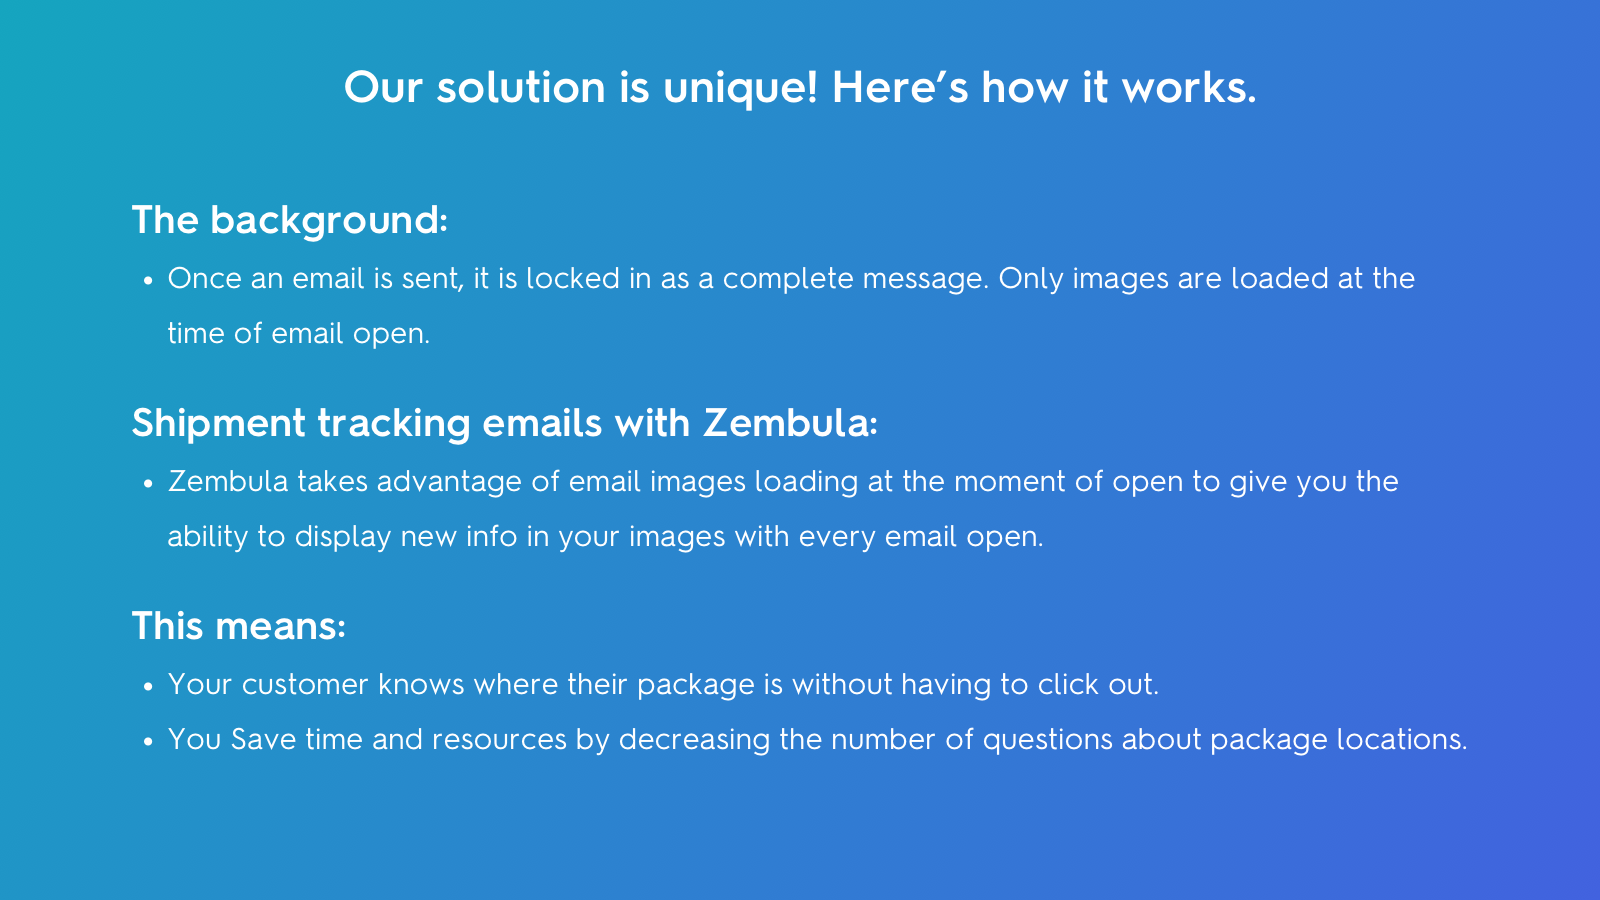 Cómo funciona Zembula: Las imágenes se cargan en cada apertura de correo electrónico.